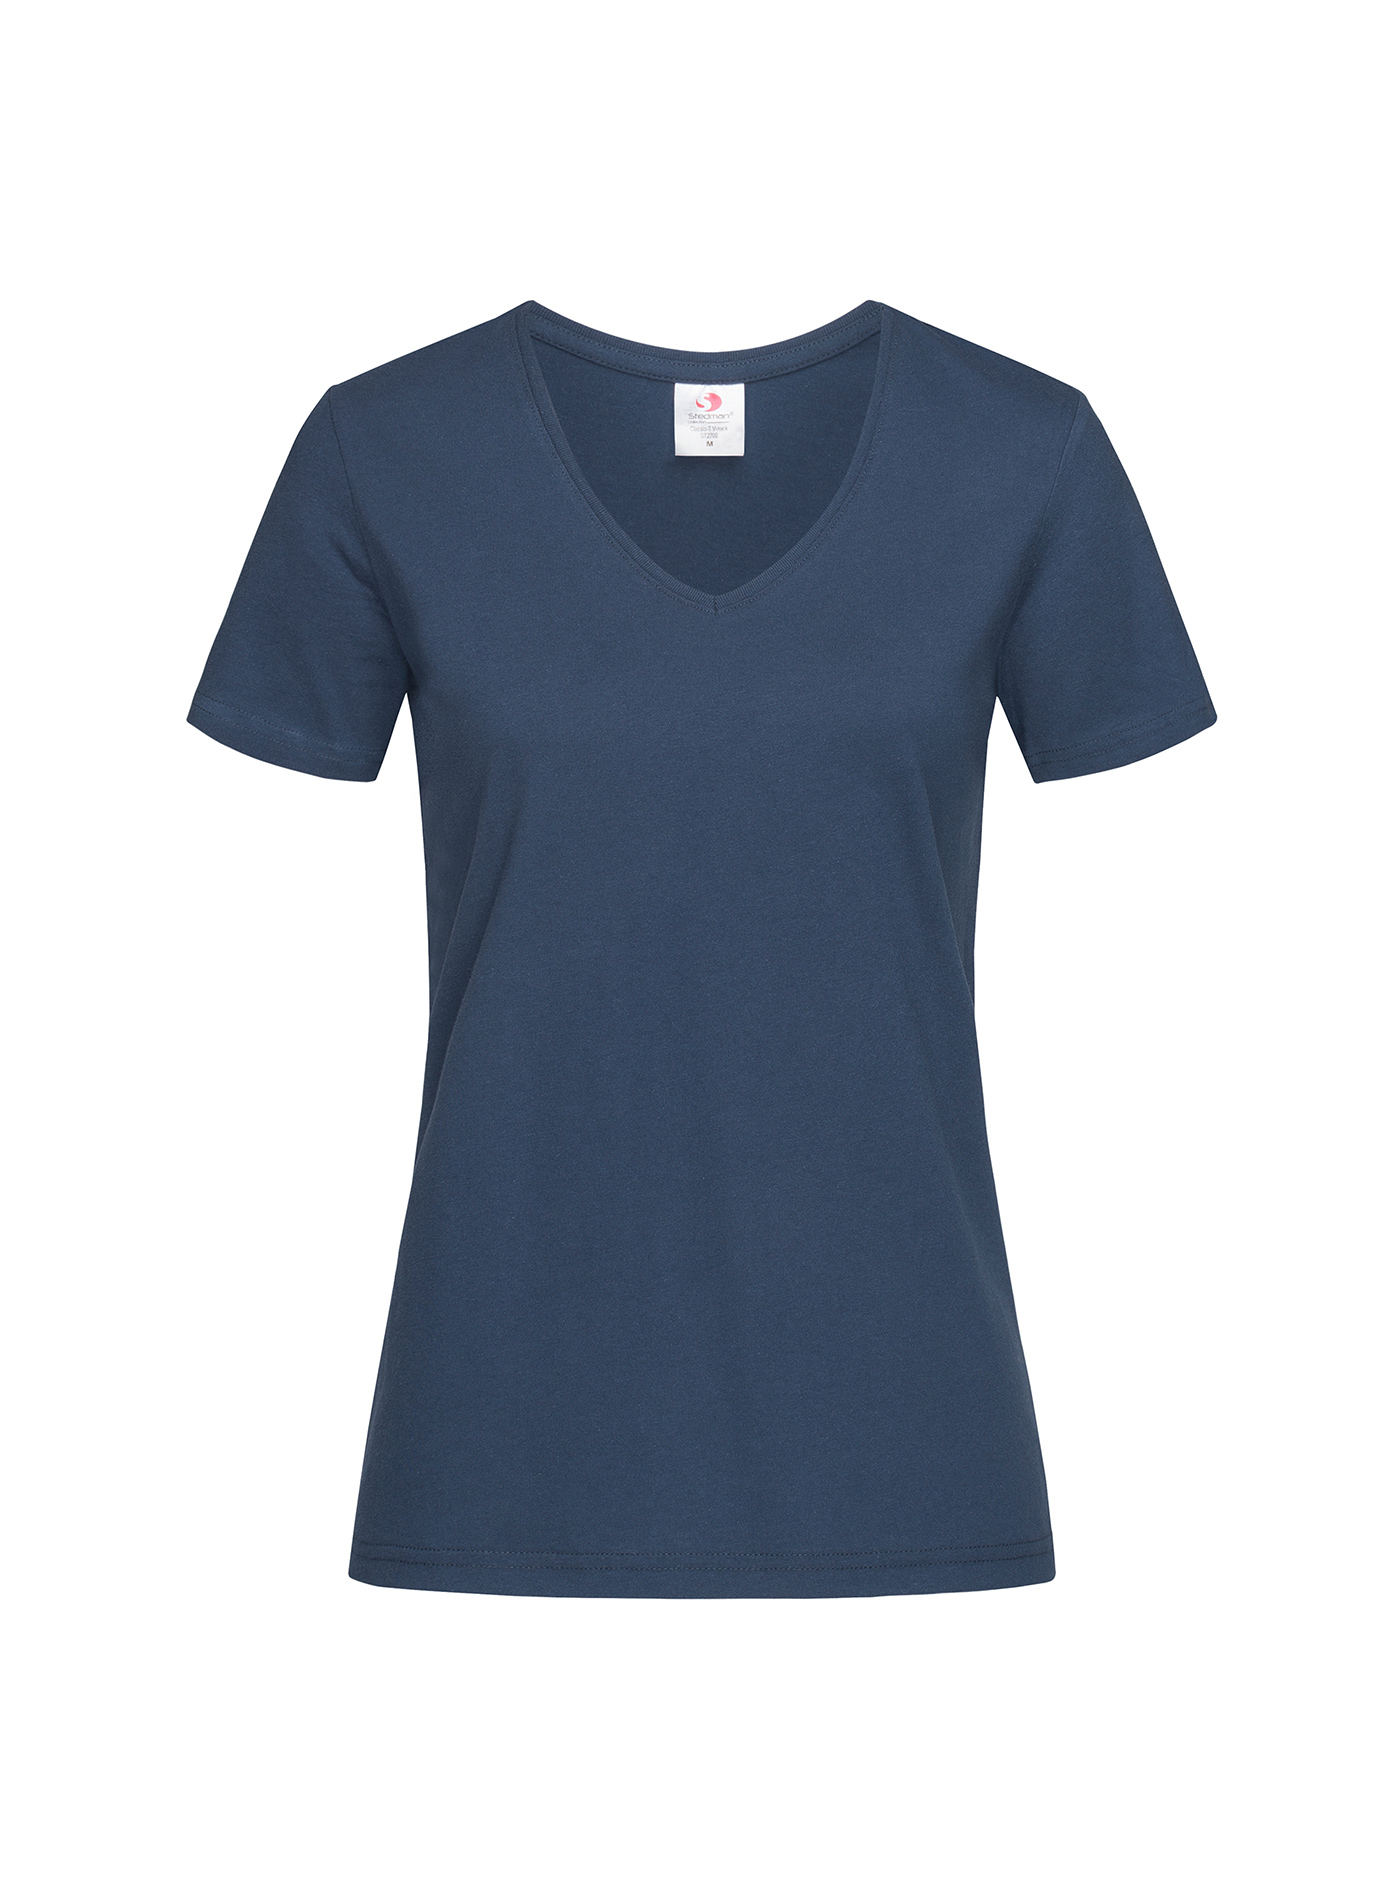 Dámské tričko s V-výstřihem Stedman - Námořnická modrá L